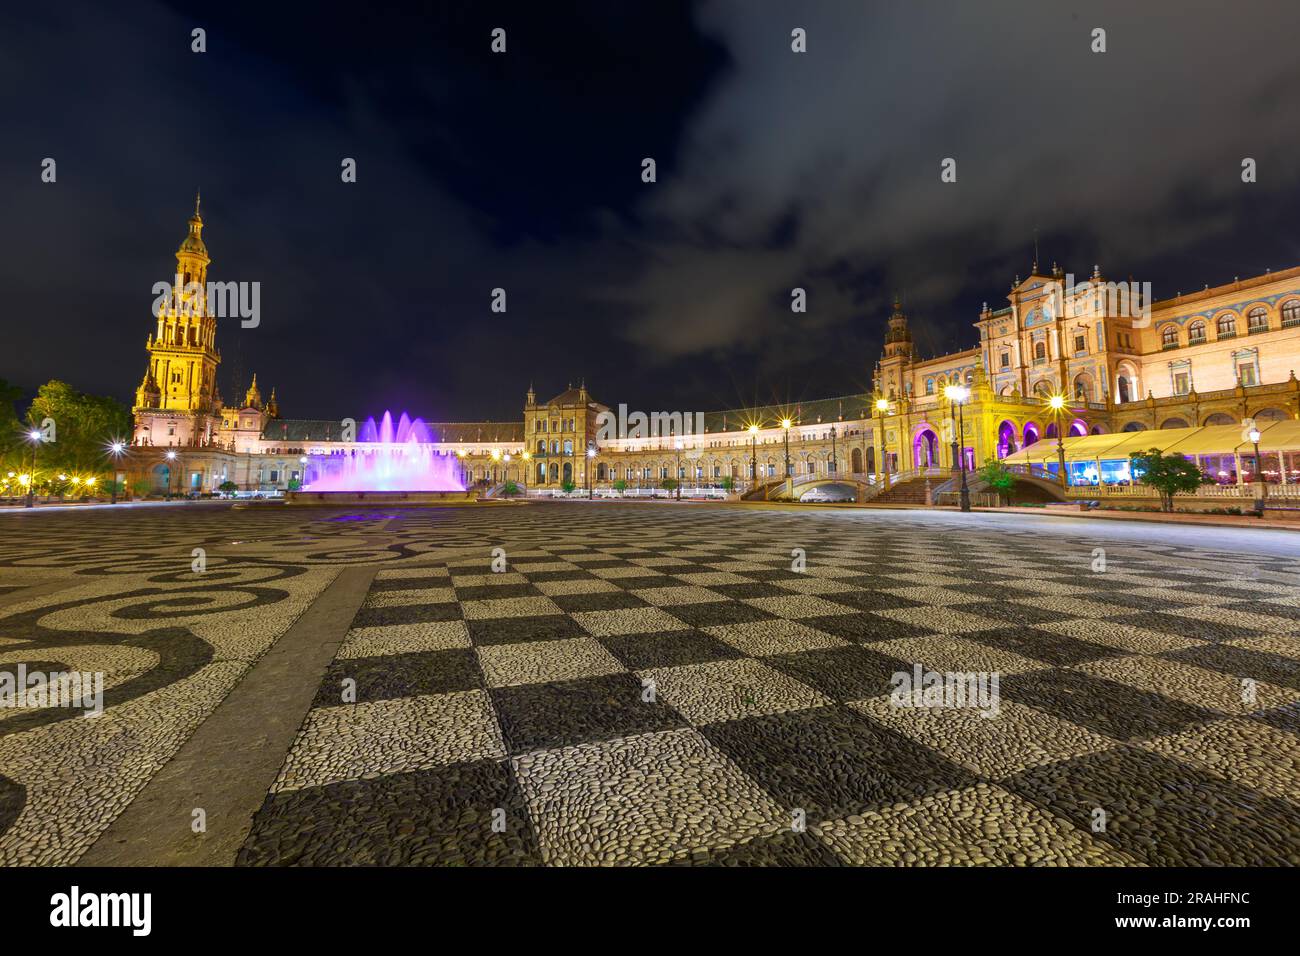 Fontana illuminata di notte in Plaza de Espana della città di Siviglia in Spagna, con acqua in movimento viola. Foto Stock